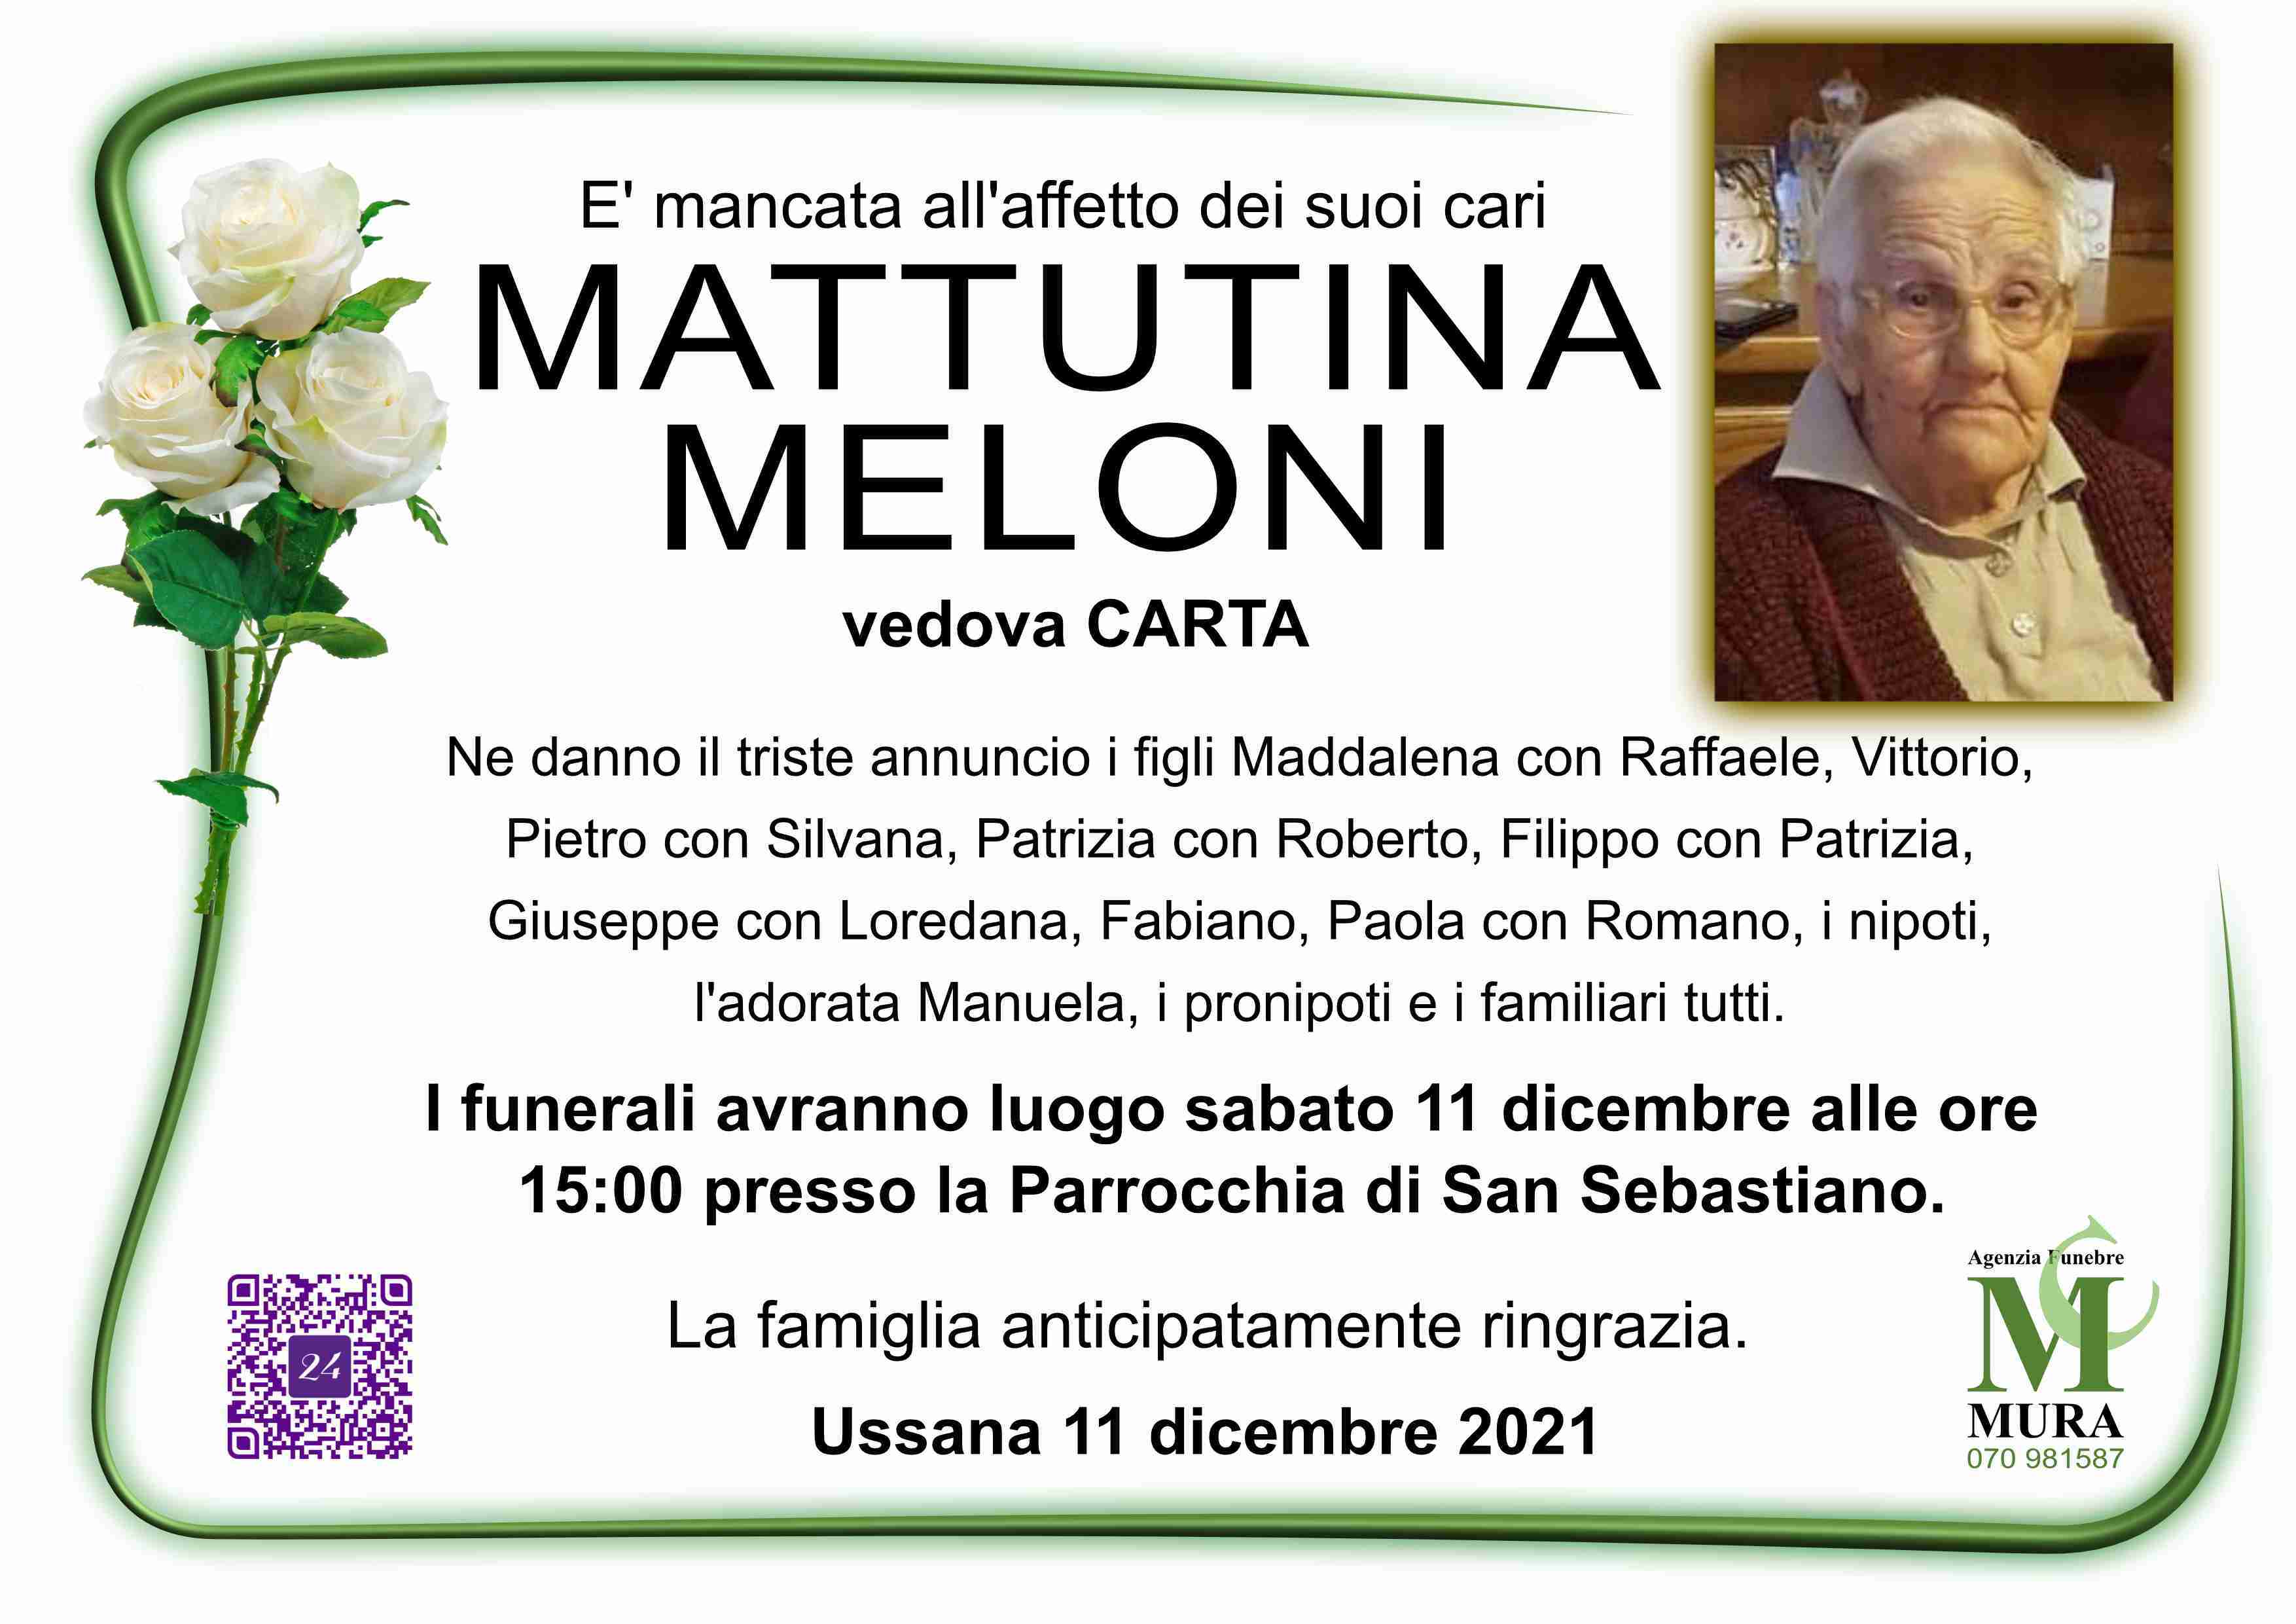 Mattutina Meloni